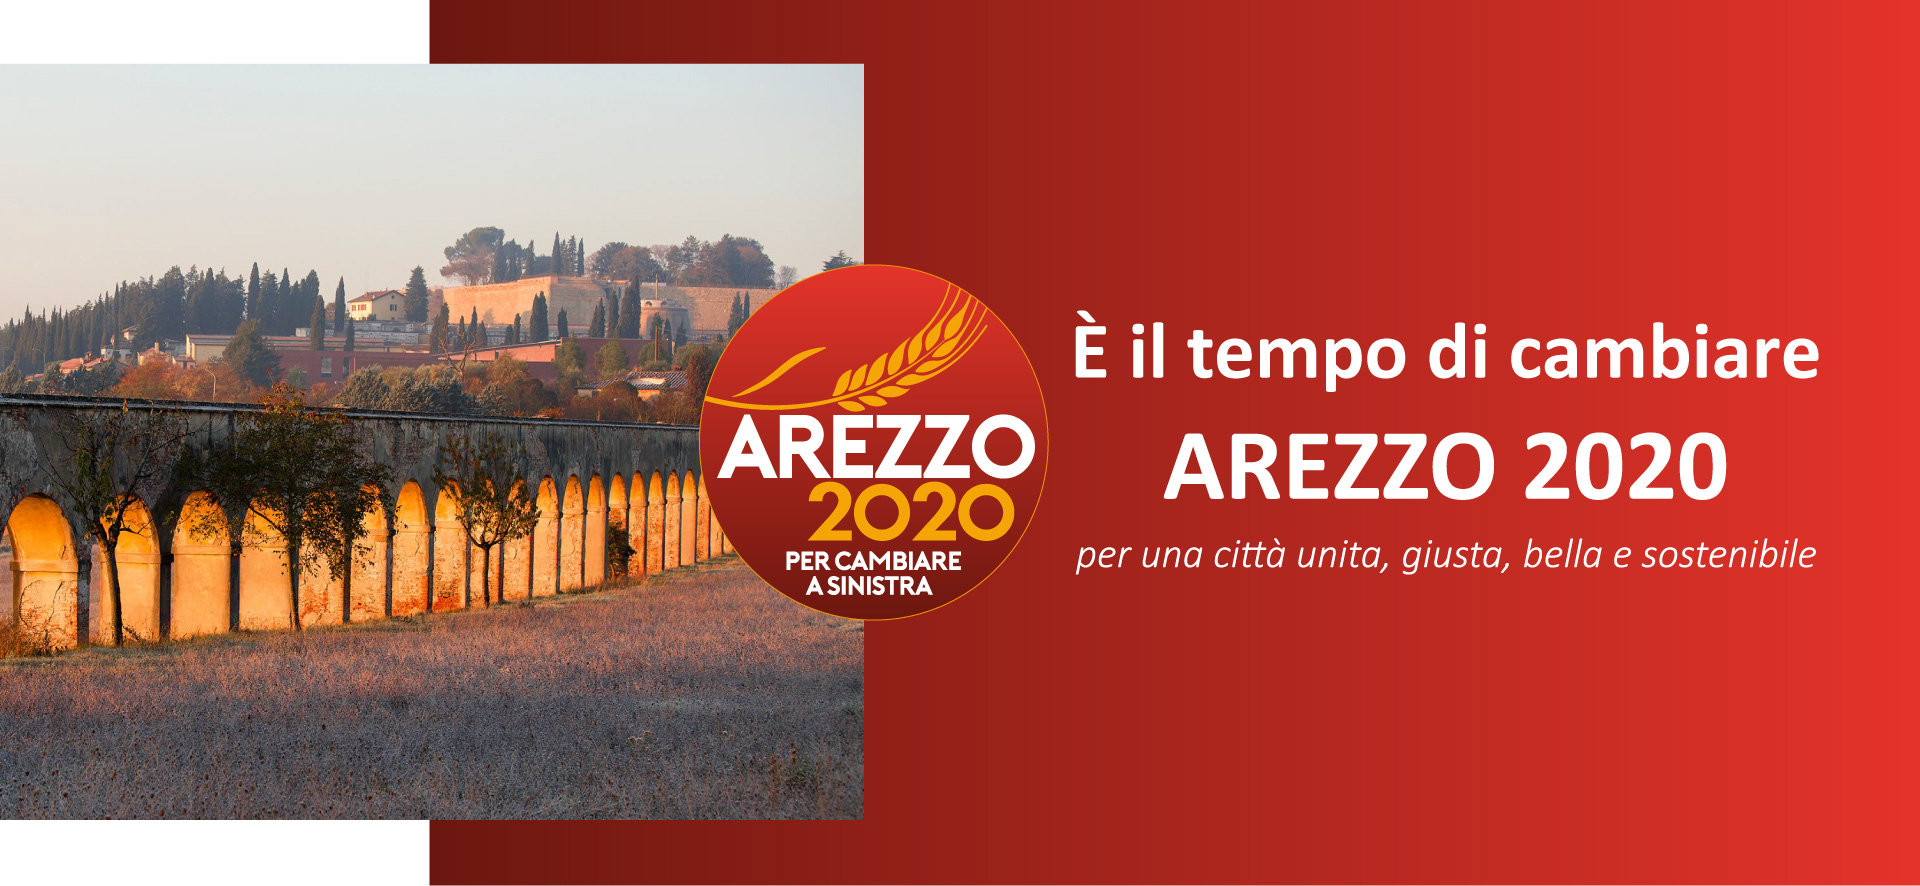 Ritardi e inefficienze sul fronte urbanistico. Arezzo 2020: “Non si uccide così anche la possibile ripresa?”